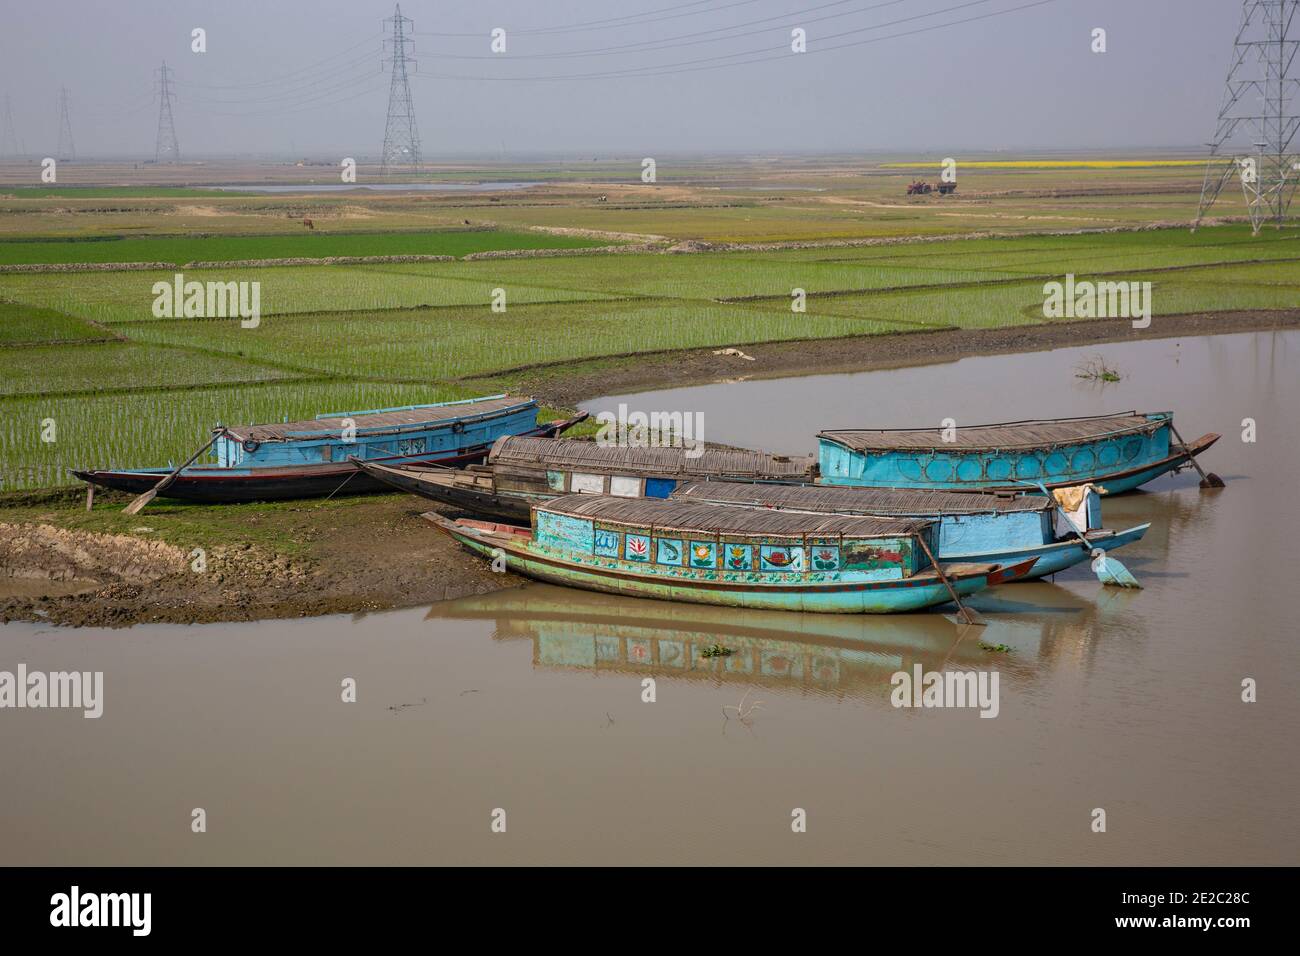 Barche sulla riva del fiume Titas in Brahmanbaria, Bangladesh. Foto Stock